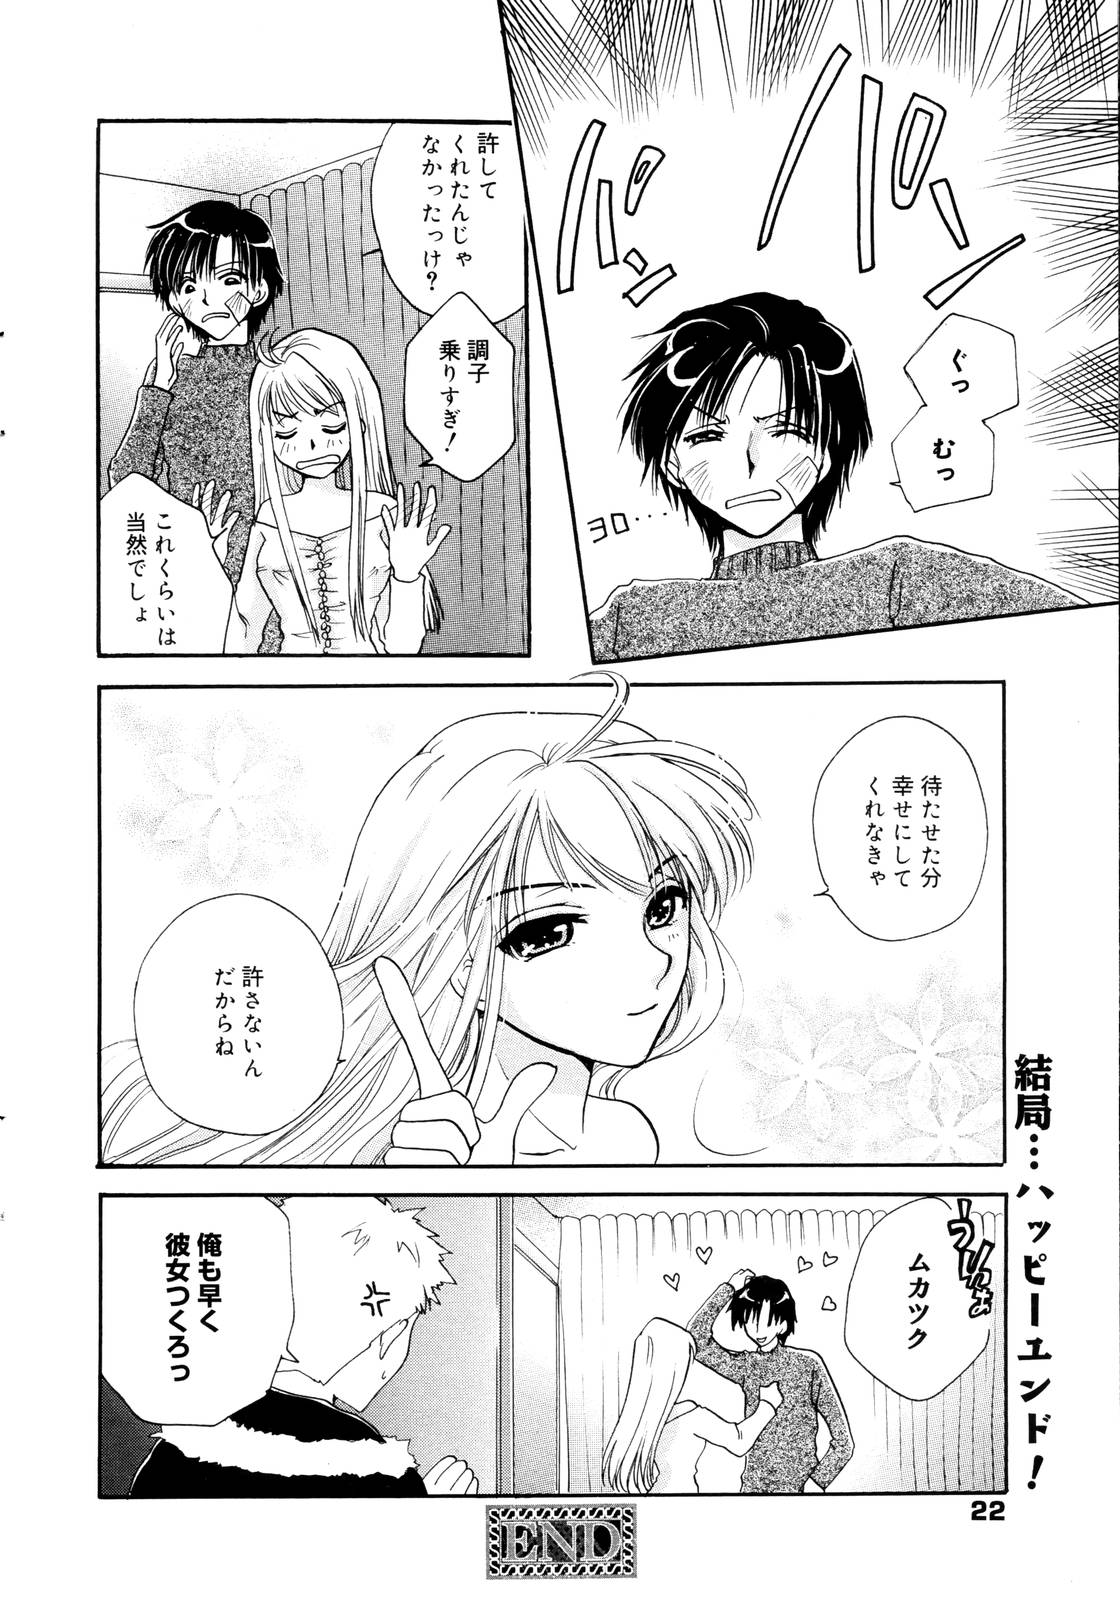 Manga Bangaichi 2006-01 page 22 full